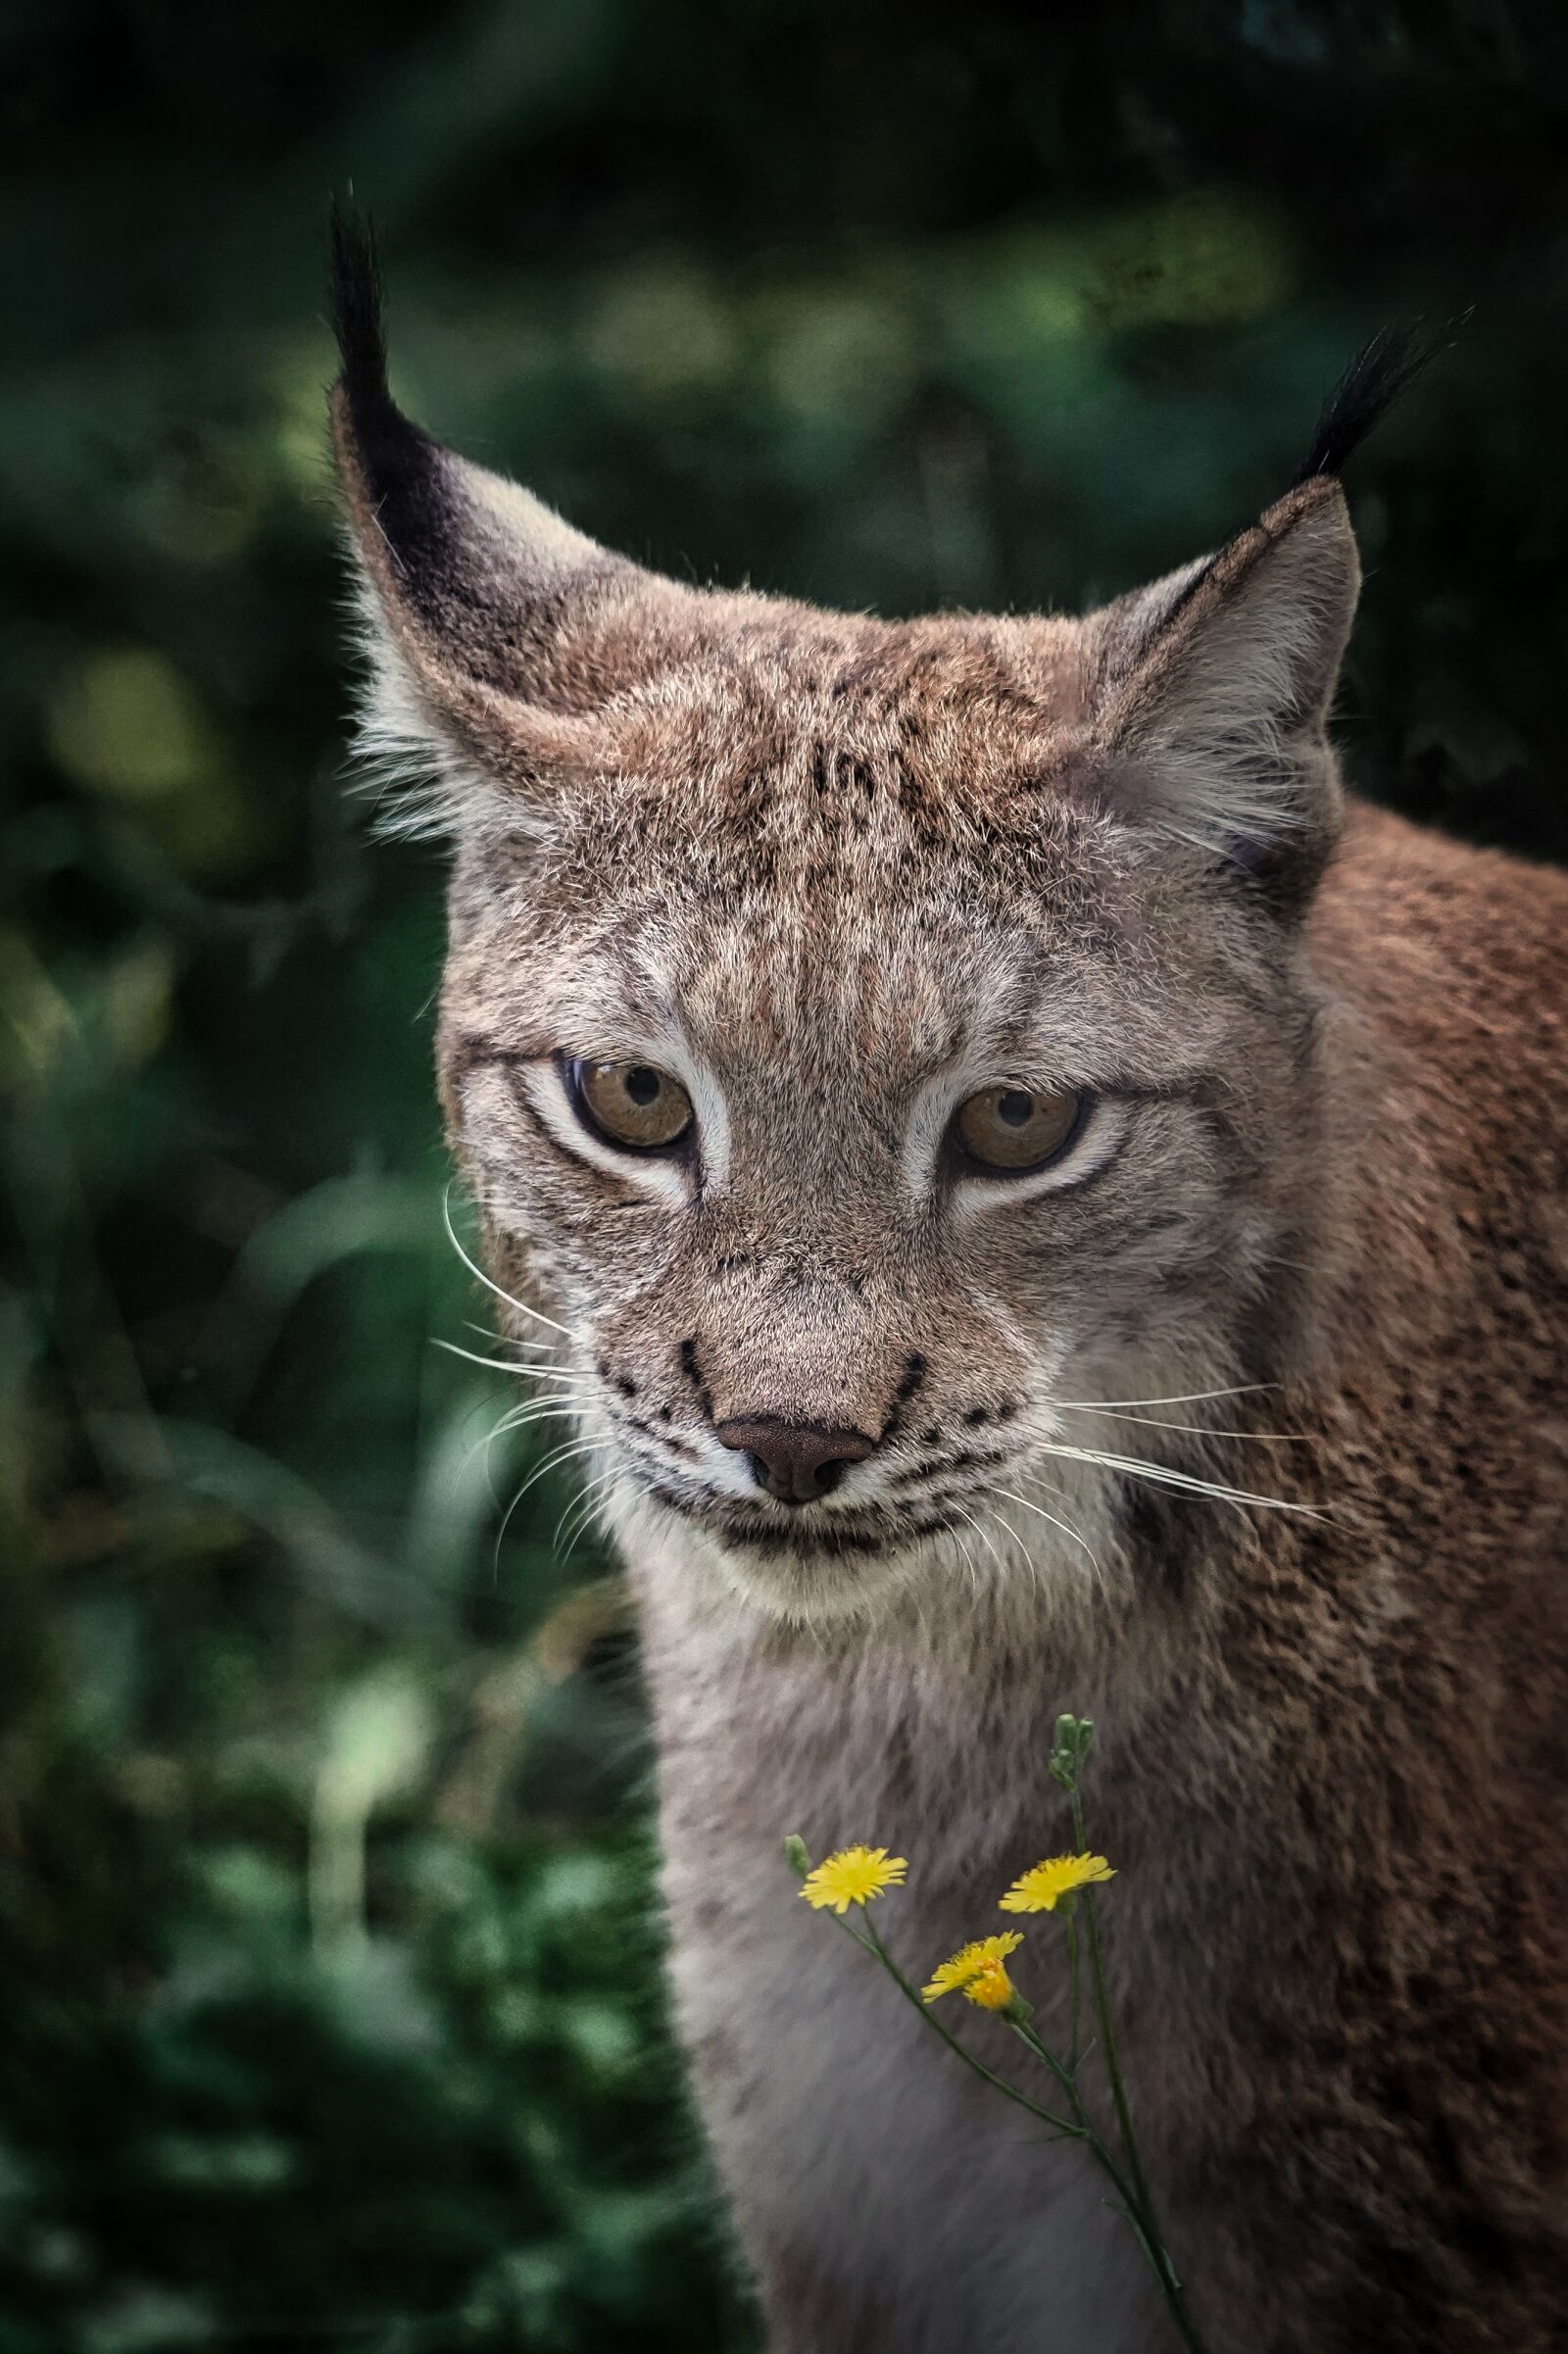 Sony a7 III sample photo. Lynx, eurasian lynx, animal photography